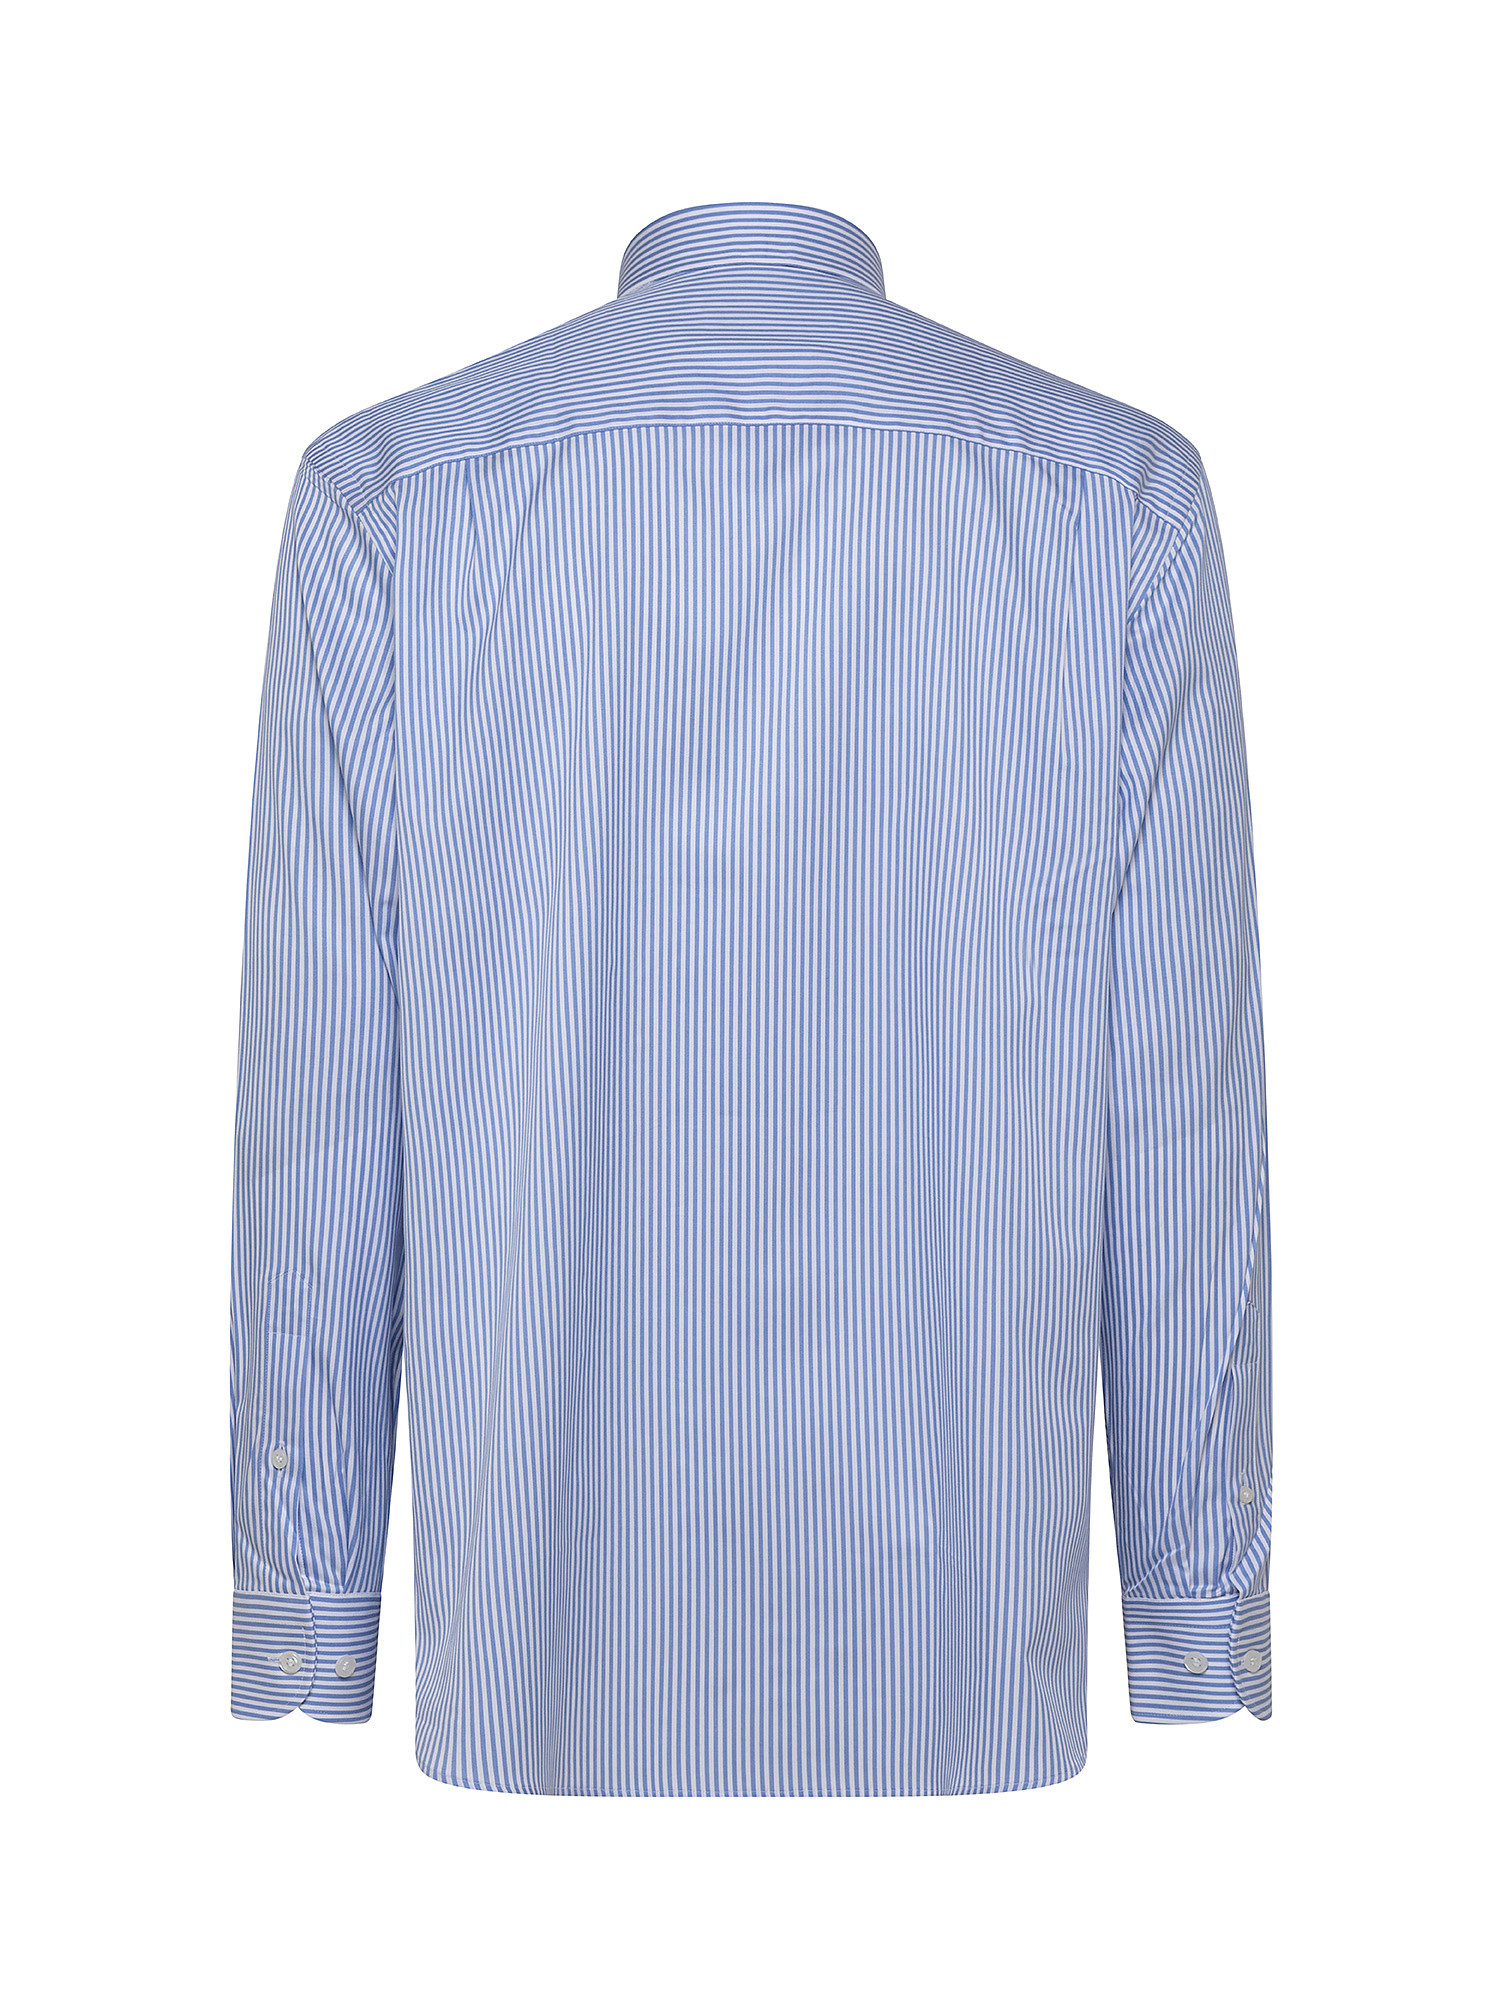 Regular fit cotton poplin shirt, Light Blue, large image number 1